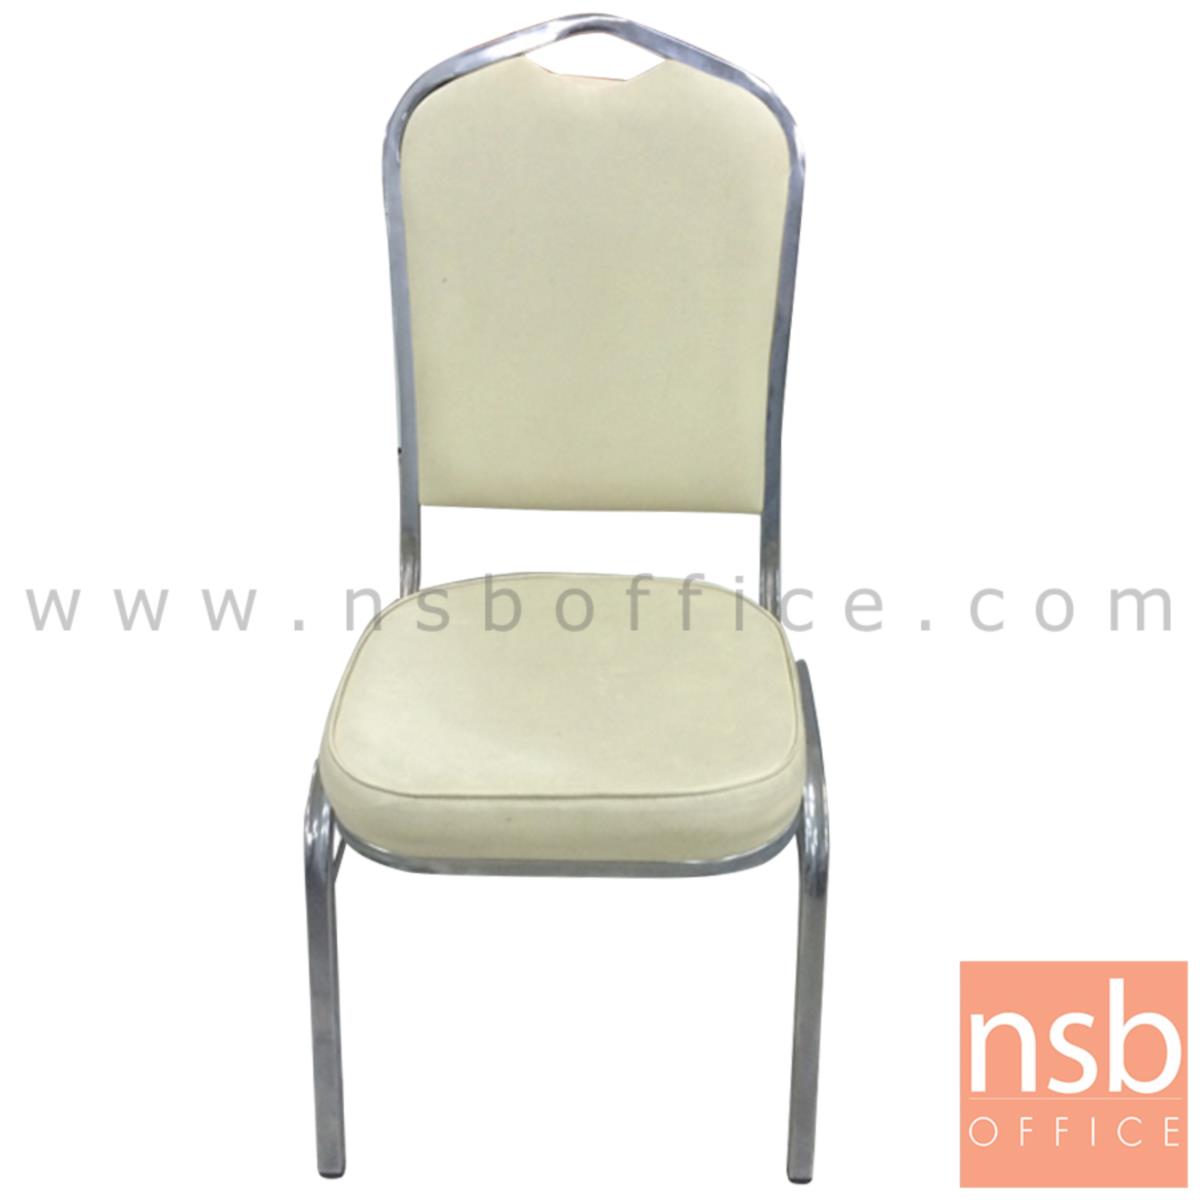 B08A061:เก้าอี้อเนกประสงค์จัดเลี้ยง รุ่น Roborovski  ขนาด 93H cm. ขาเหล็กชุบโครเมี่ยม